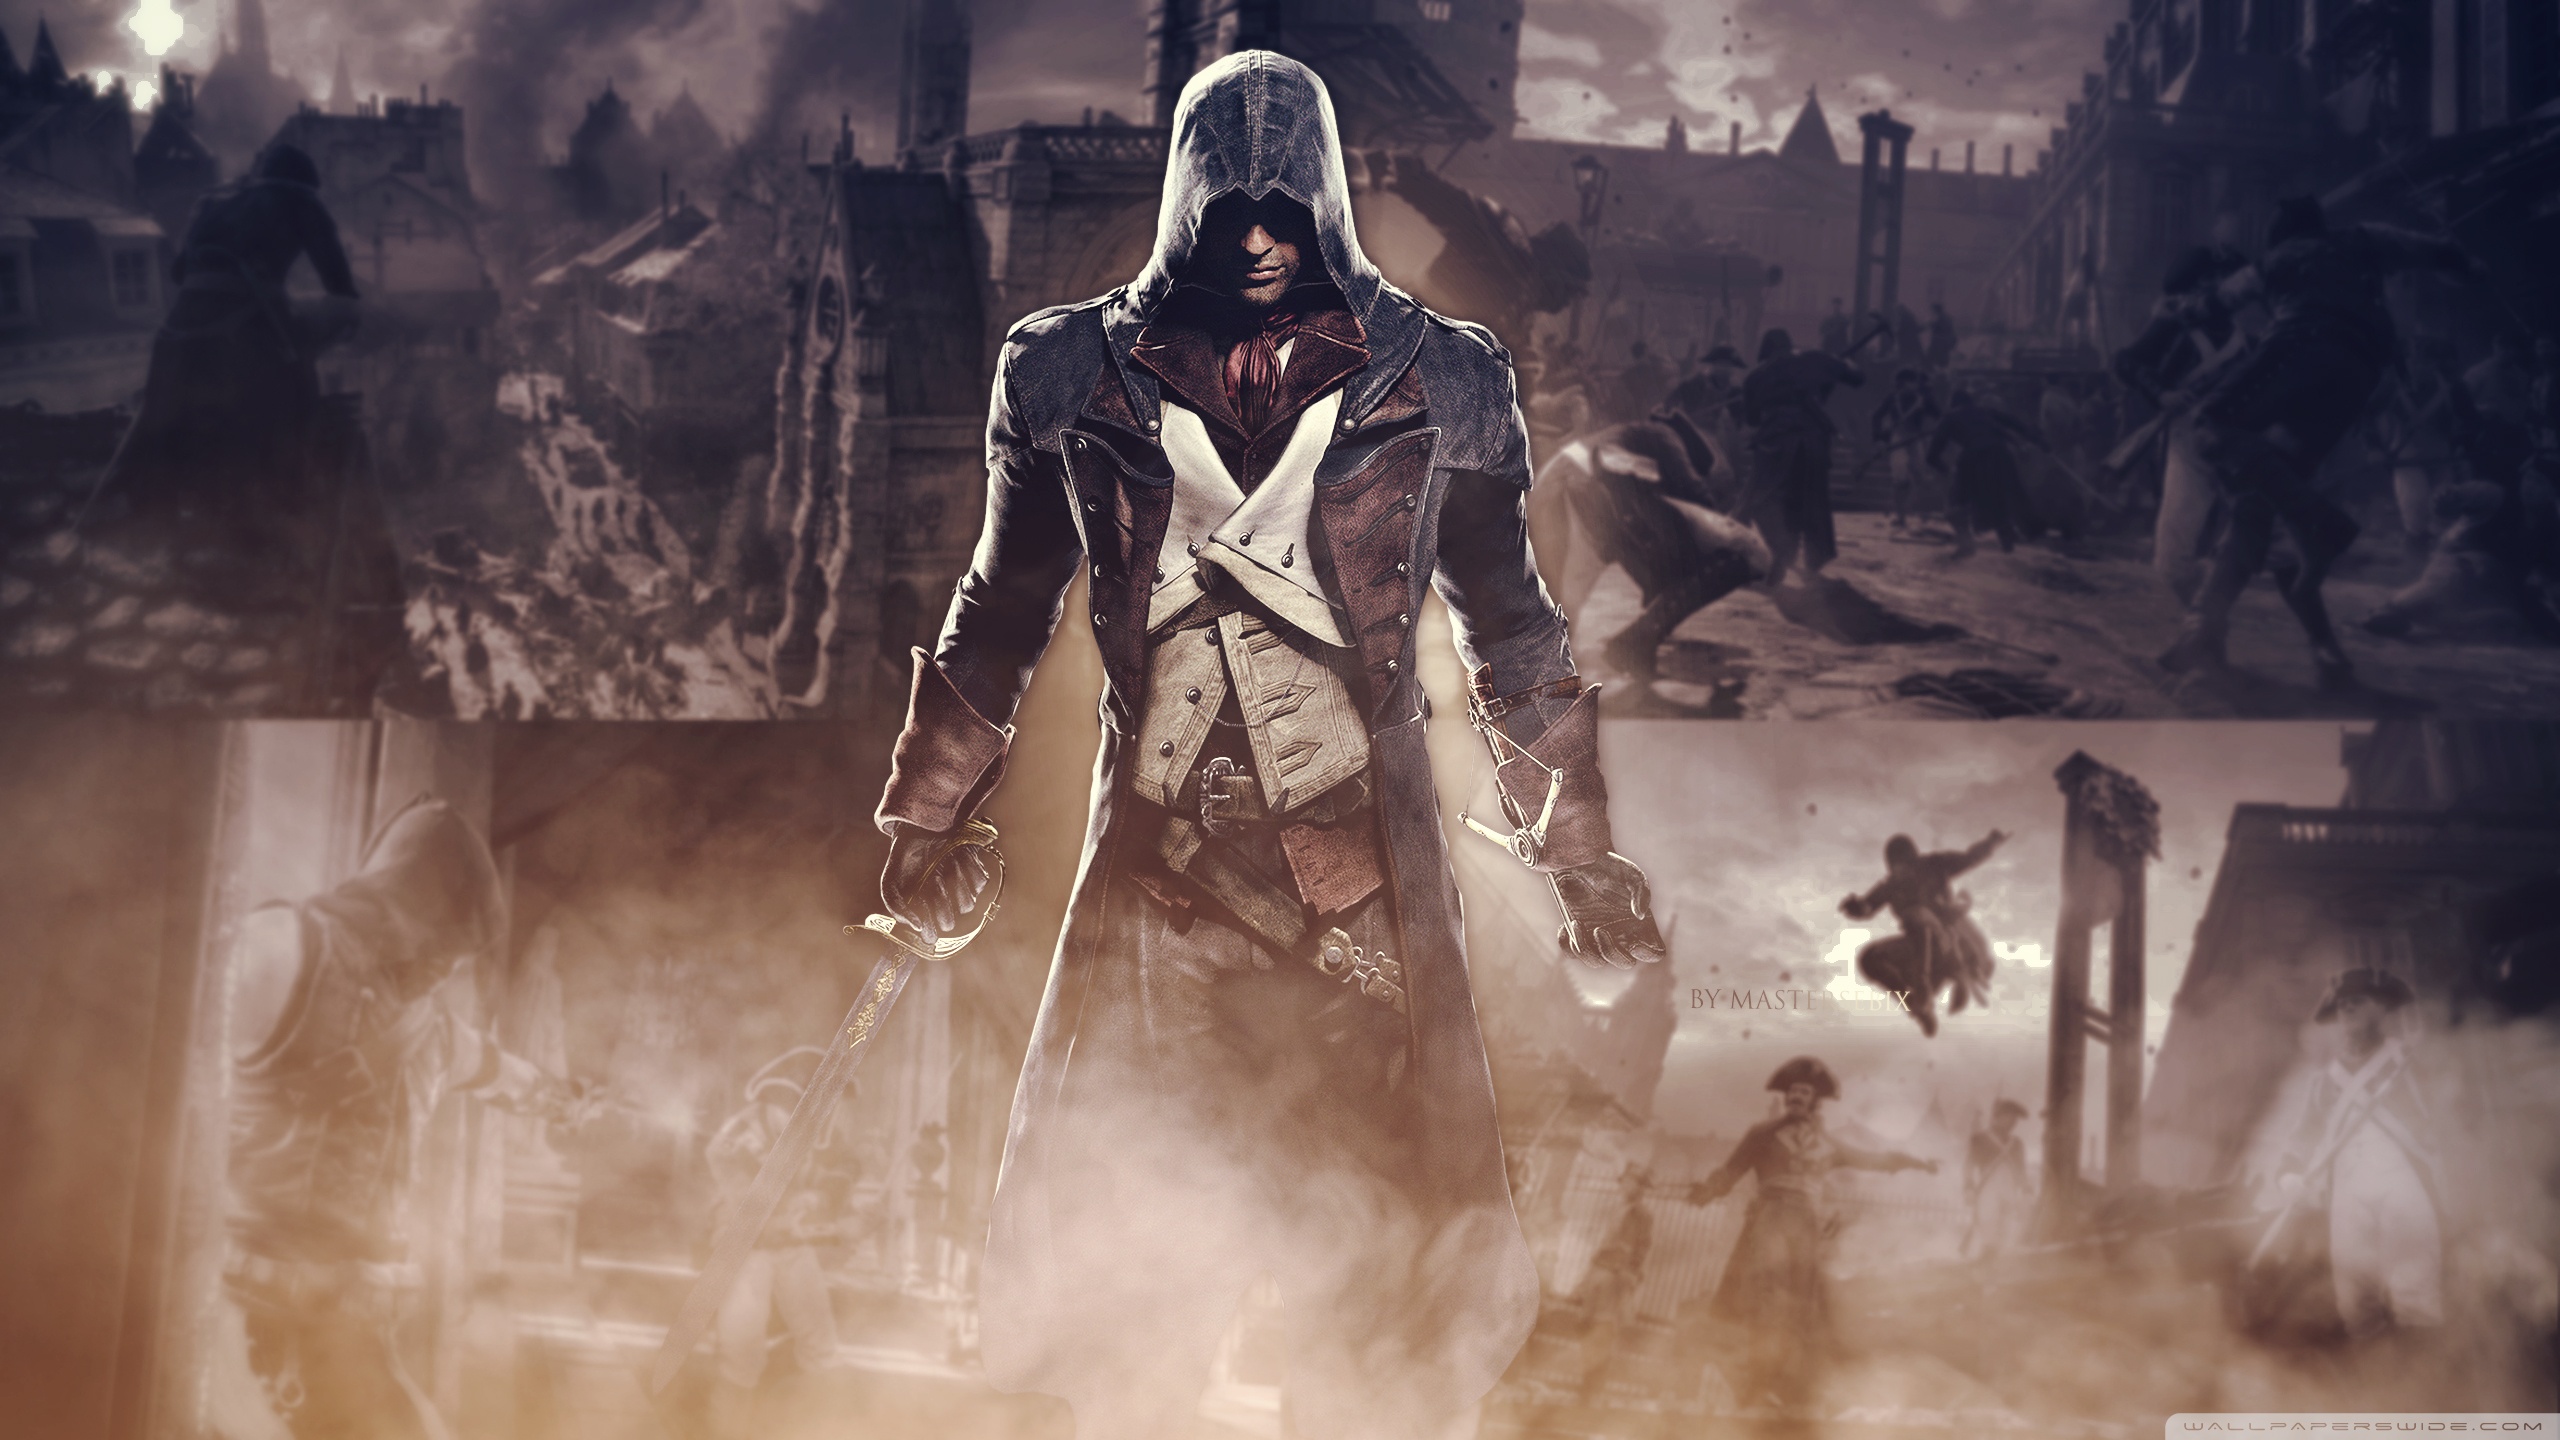 Assassin's Creed Hd Wallpaper 1080p - 2560x1440 Wallpaper 